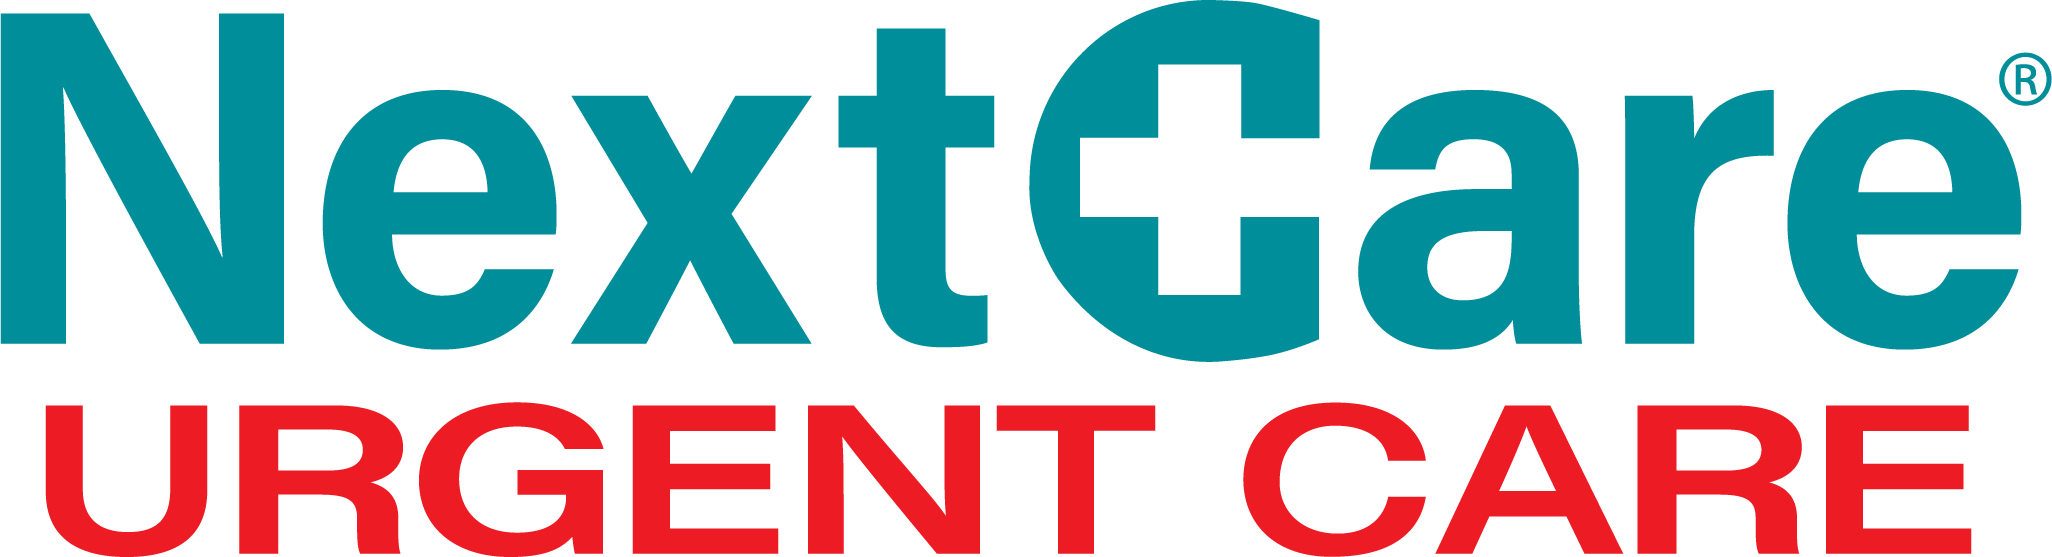 NextCare Urgent Care - Mesquite Logo